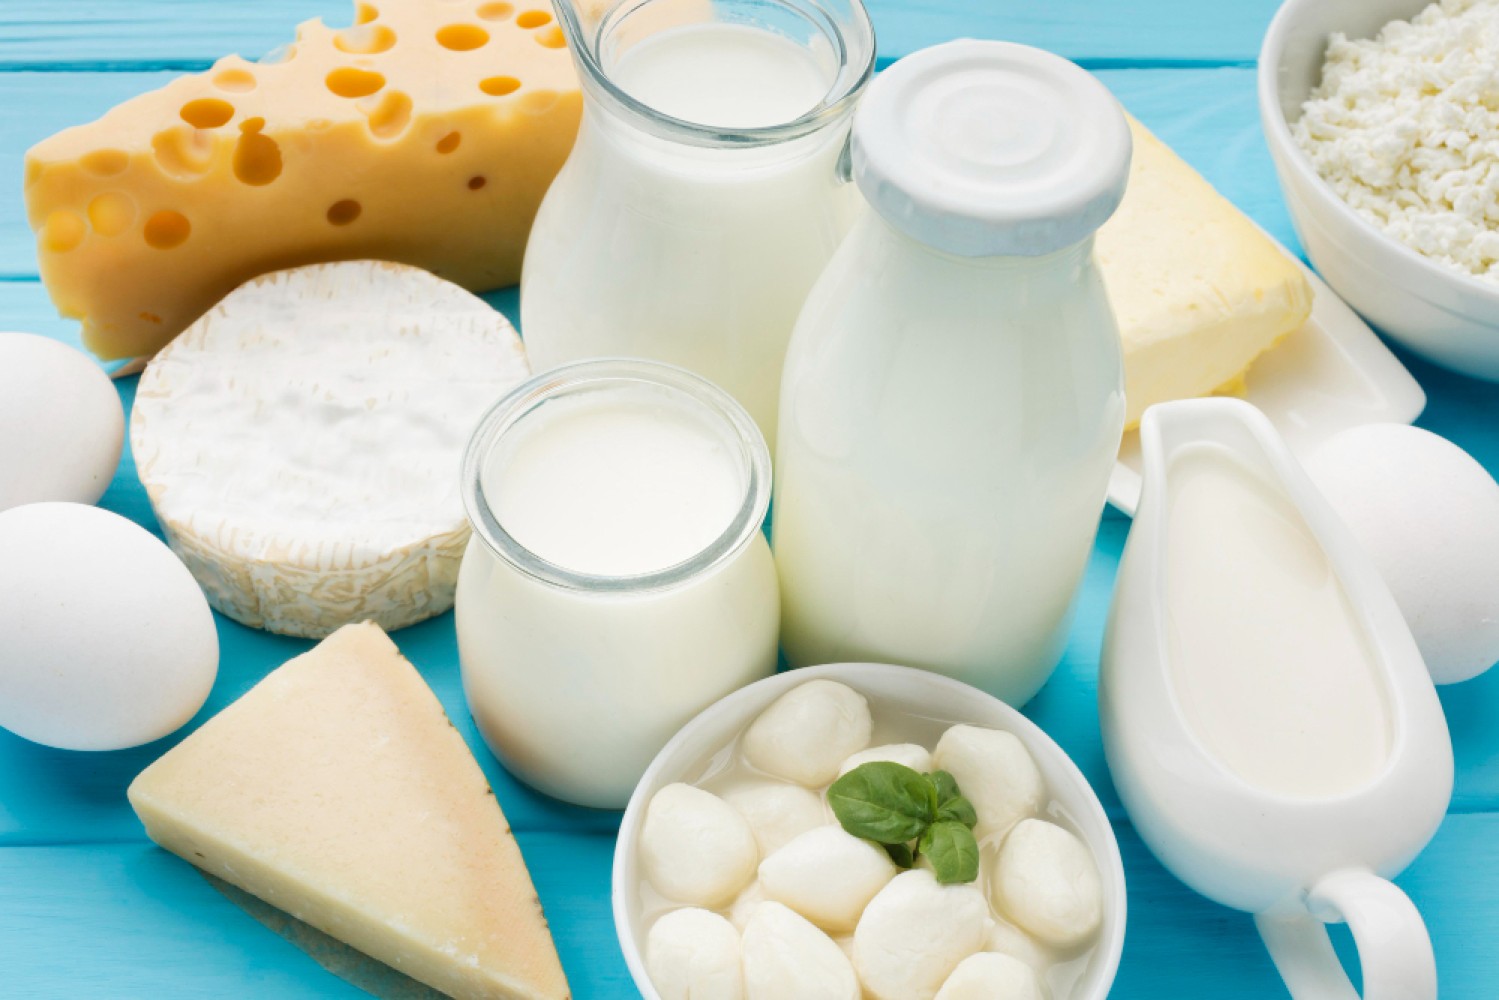 Сырое молоко - это молоко, которое не подвергалось термической обработке. Сырое молоко упаковывают в пластиковые или стеклянные бутылки. Хранить сырое молоко нужно при температуре от +2 до +6 градусов Цельсия.